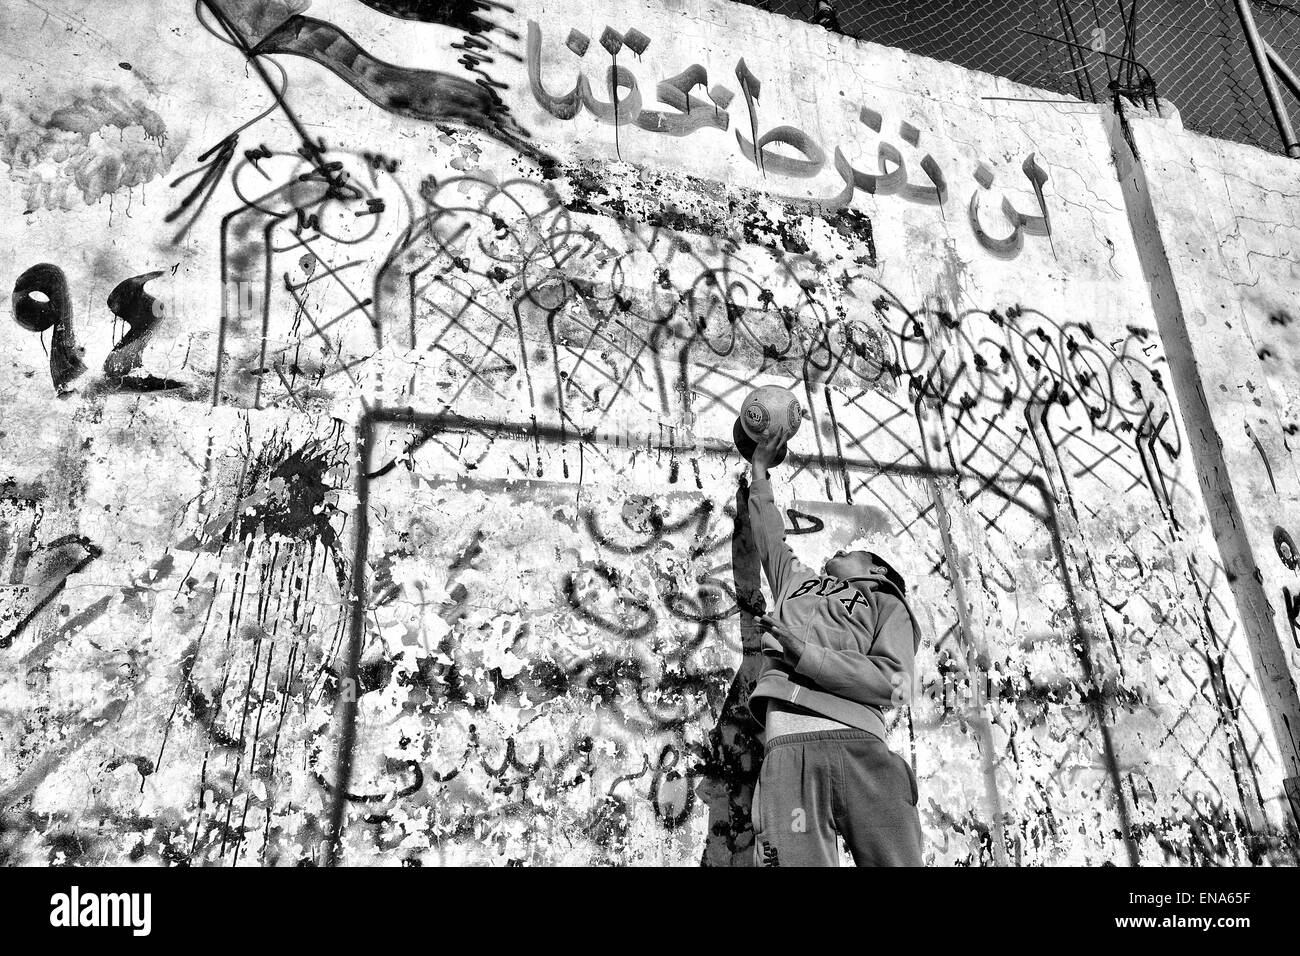 La Palestine. Mar 28, 2011. Un garçon tend une méthode locale de buts de soccer qui a été peint à la bombe sur un mur dans le camp de réfugiés de Jalazone. Mar. 28, 2011. Cisjordanie, Palestine. © Gabriel Romero/ZUMA/Alamy Fil Live News Banque D'Images